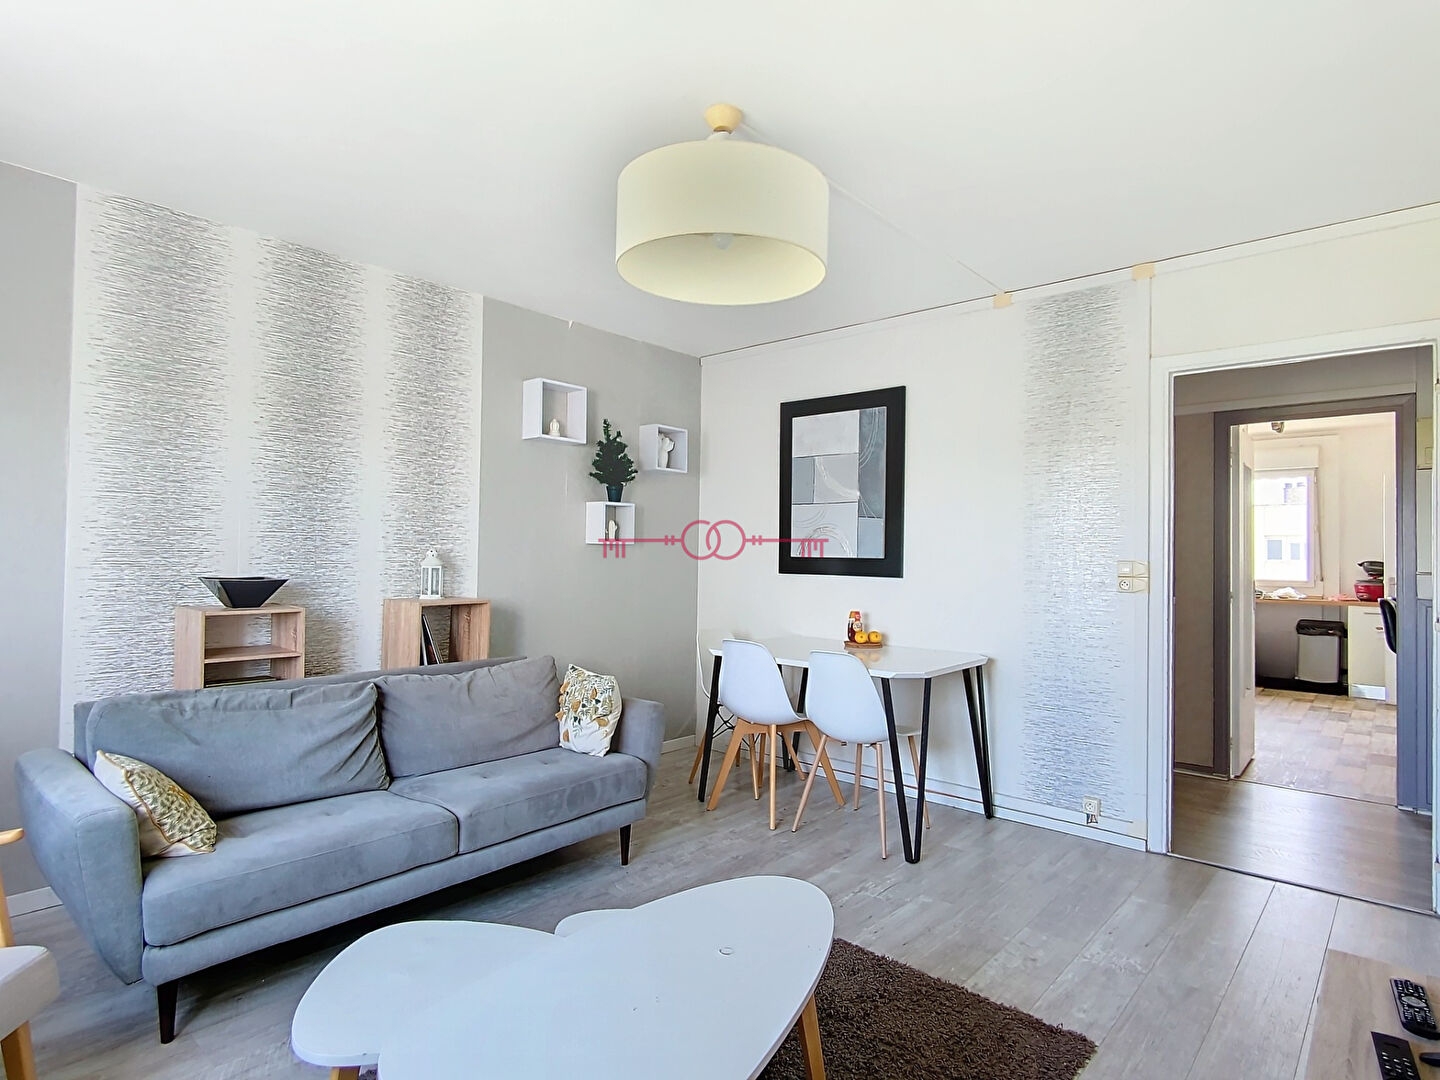 EXCLUSIVITE !!! Idéal investisseur. Appartement à Troyes, 4 pièces, 3 chambres, 85 m², loué meublé. - 2